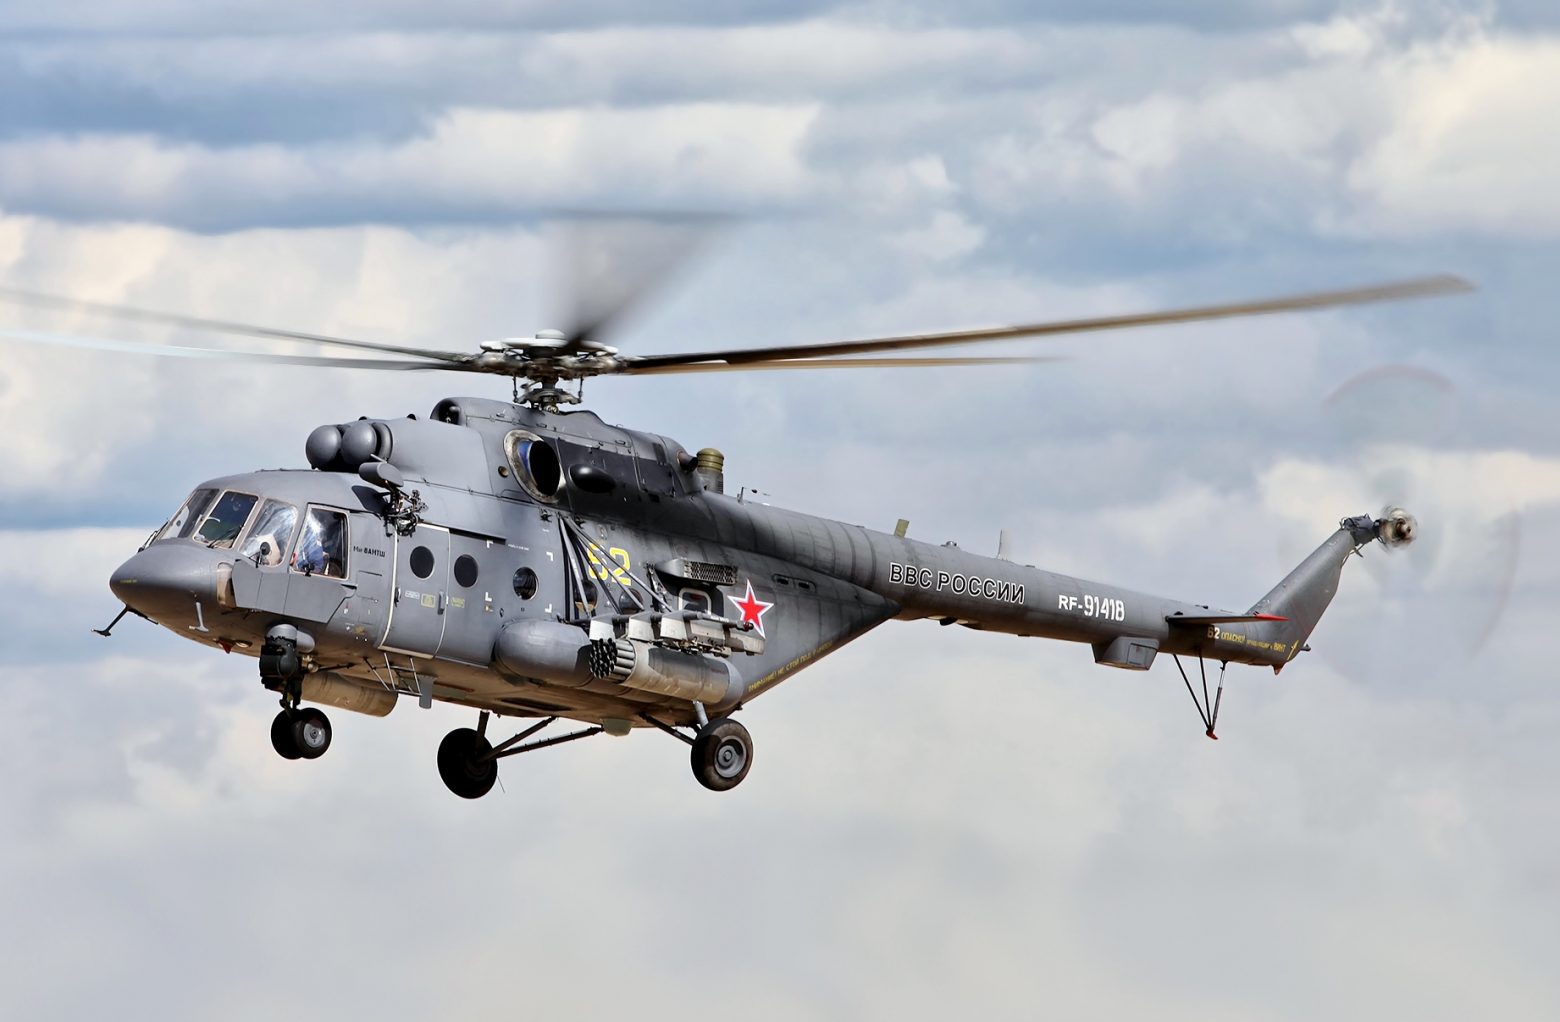 Φινλανδία: Ρωσικό ελικόπτερο παραβίασε τον εναέριο χώρο